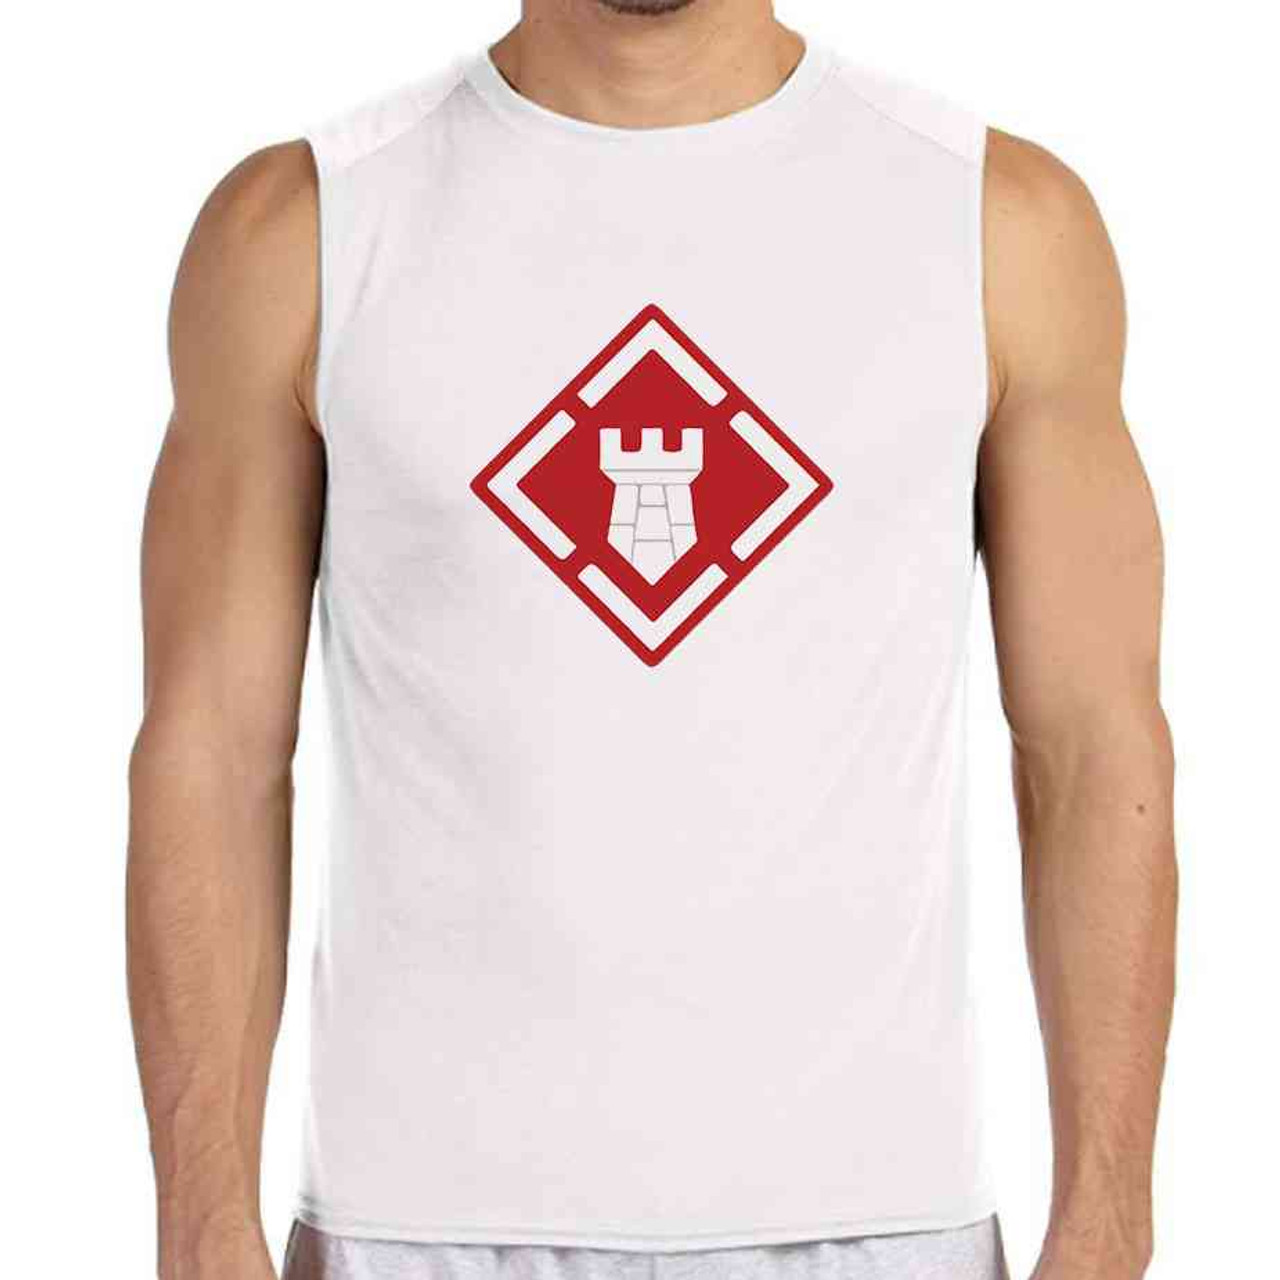 20th engineer brigade white sleeveless shirt